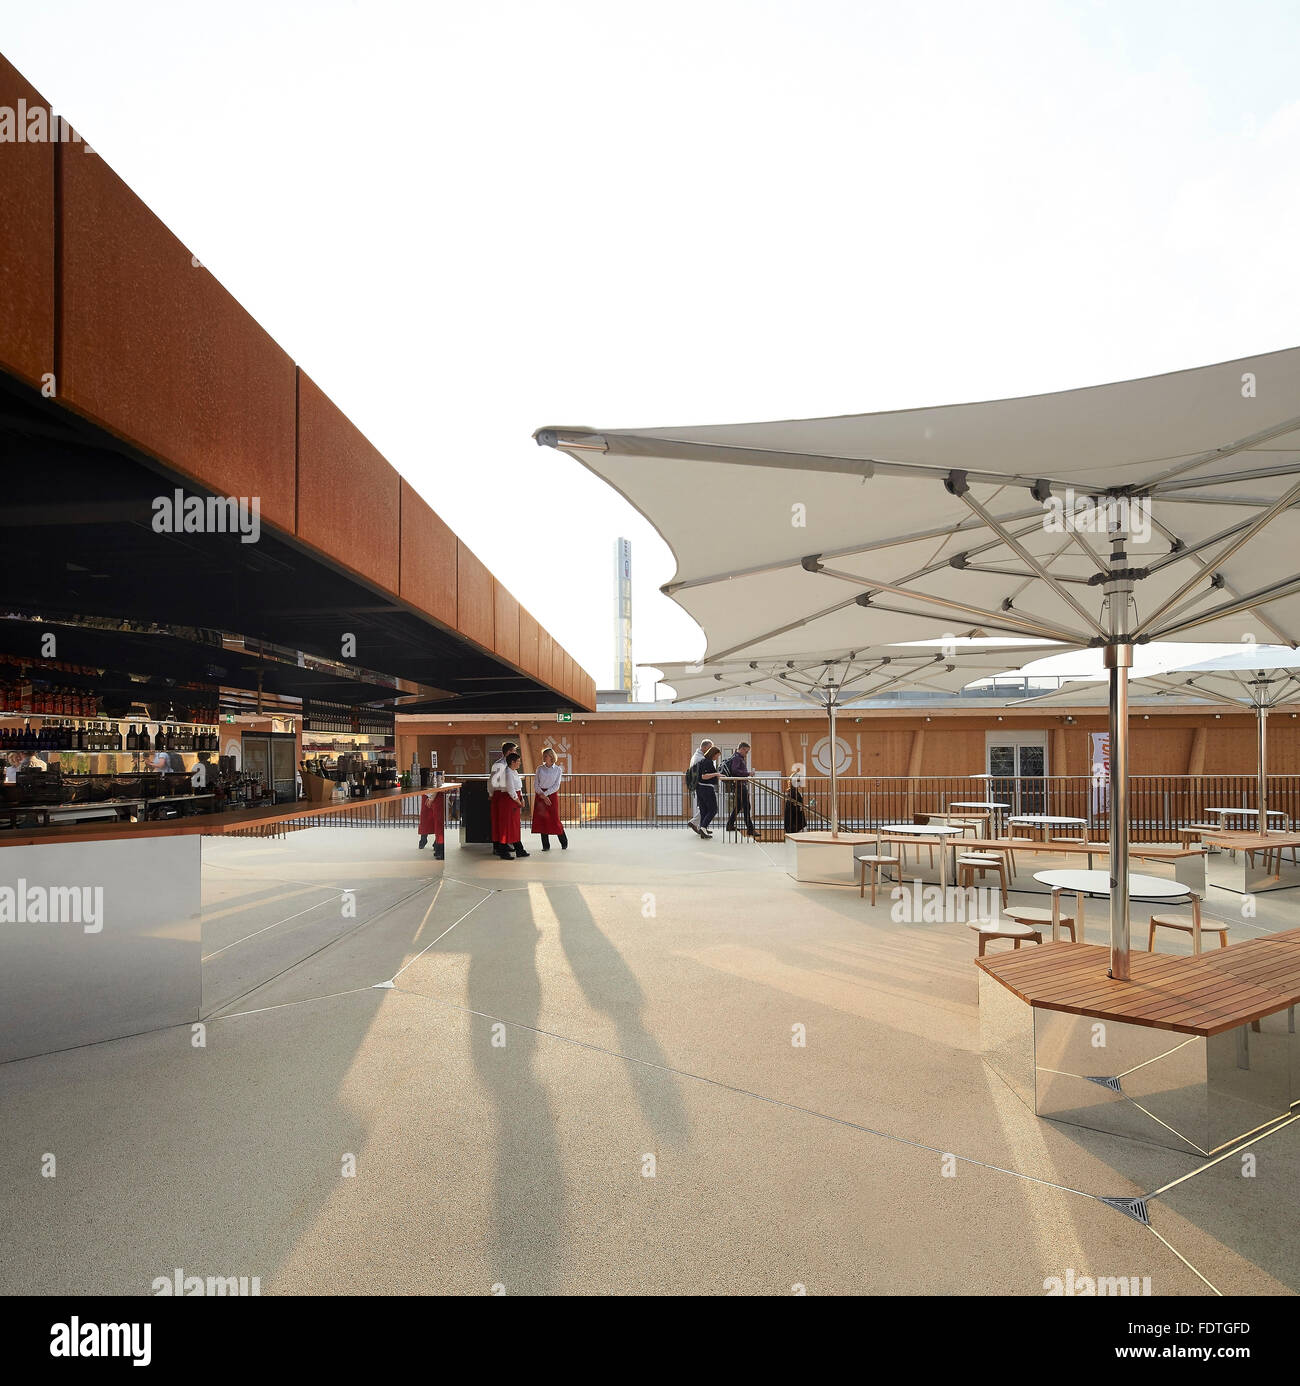 Terrasse auf dem Dach. Mailand Expo 2015, britischen Pavillon, Mailand, Italien. Architekt: Wolfgang Buttress, 2015. Stockfoto